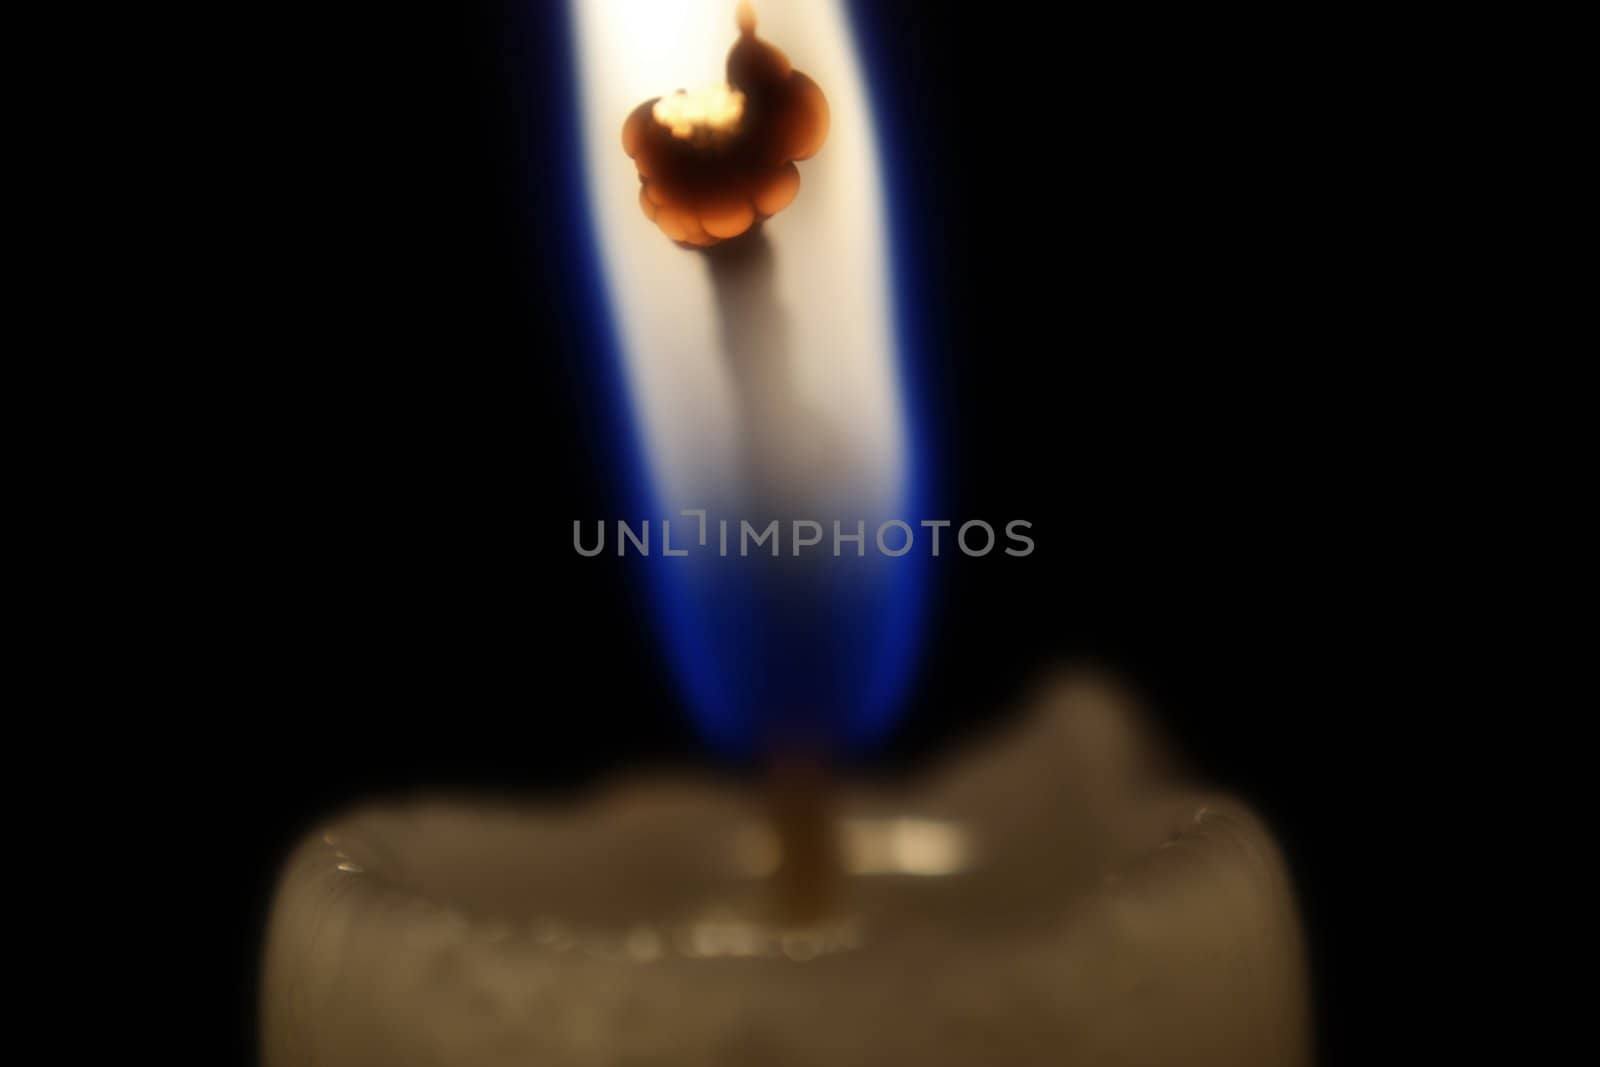 Burning candlewick isolated over black background